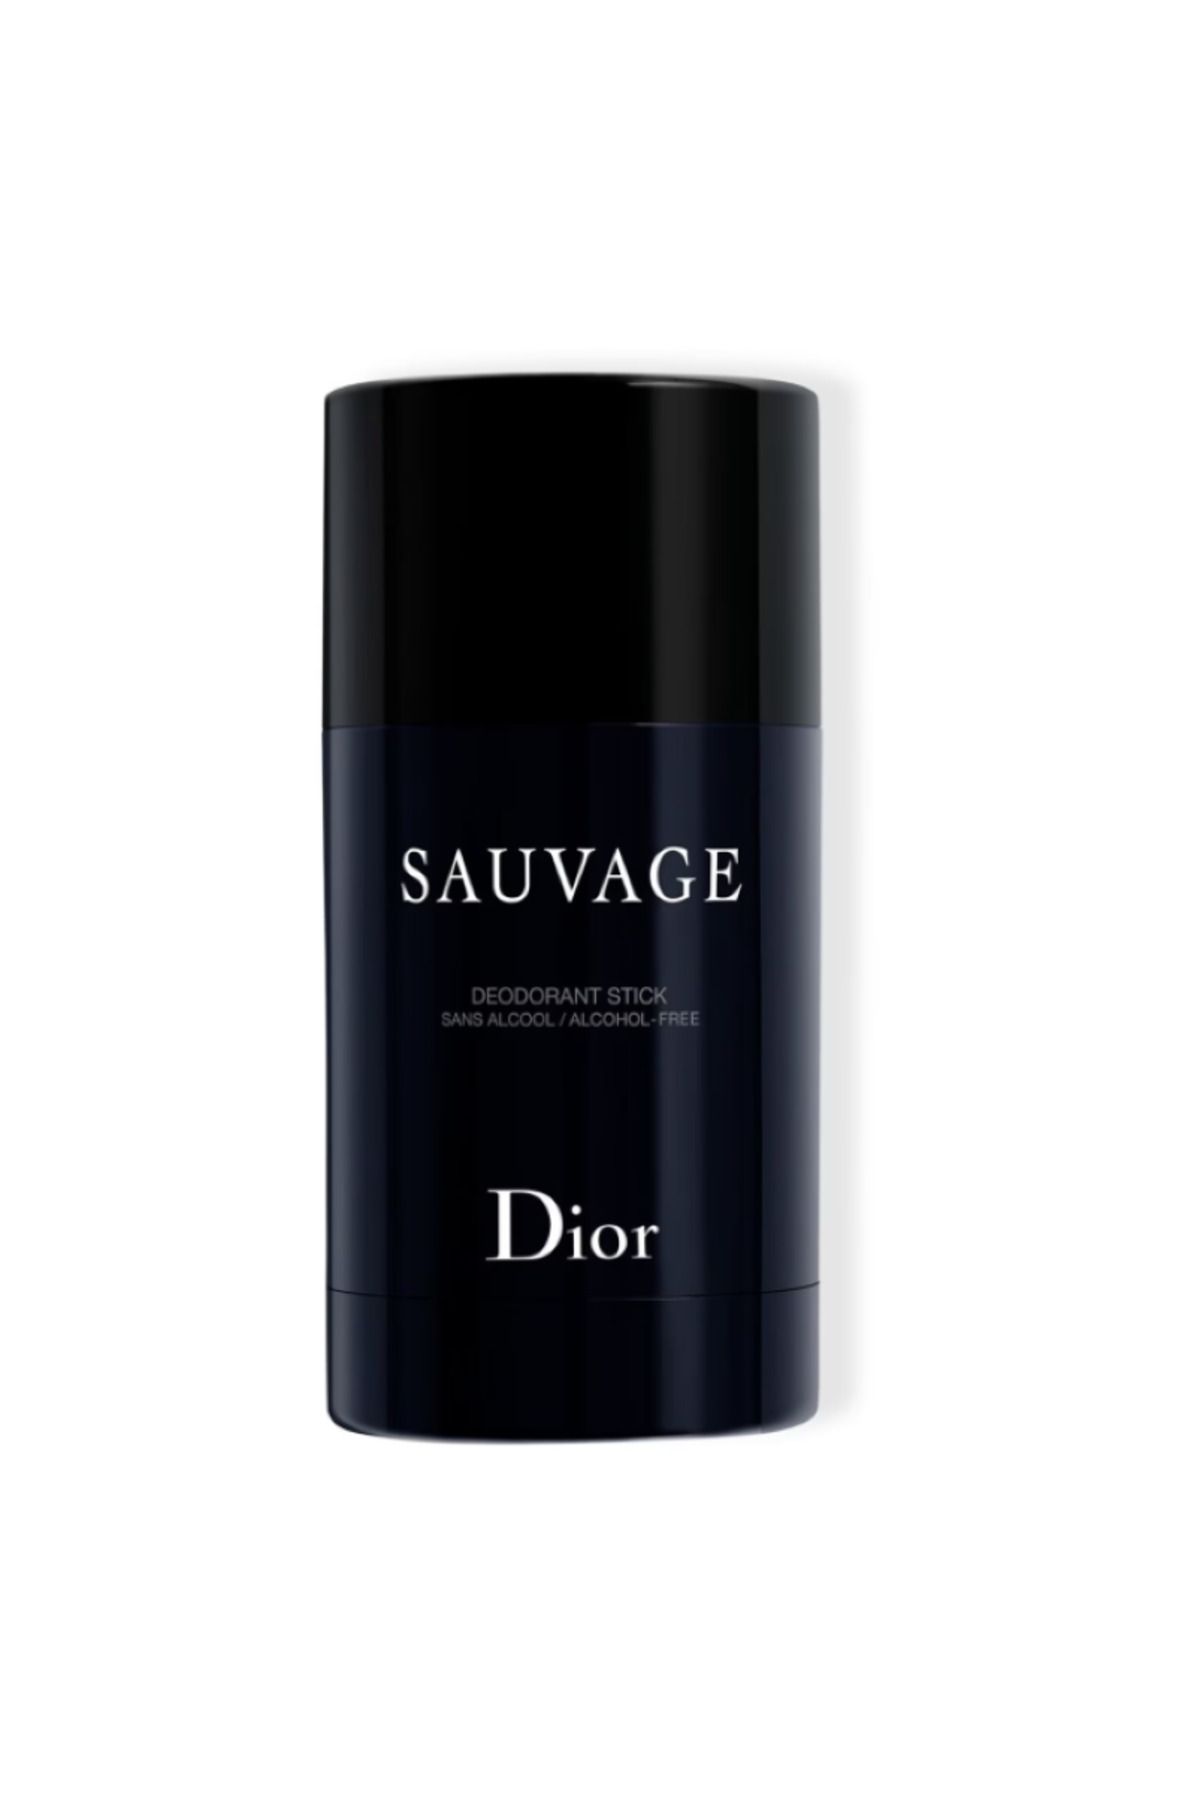 Dior Sauvage Deodorant Stick Taze Ve Odunsu 75 g